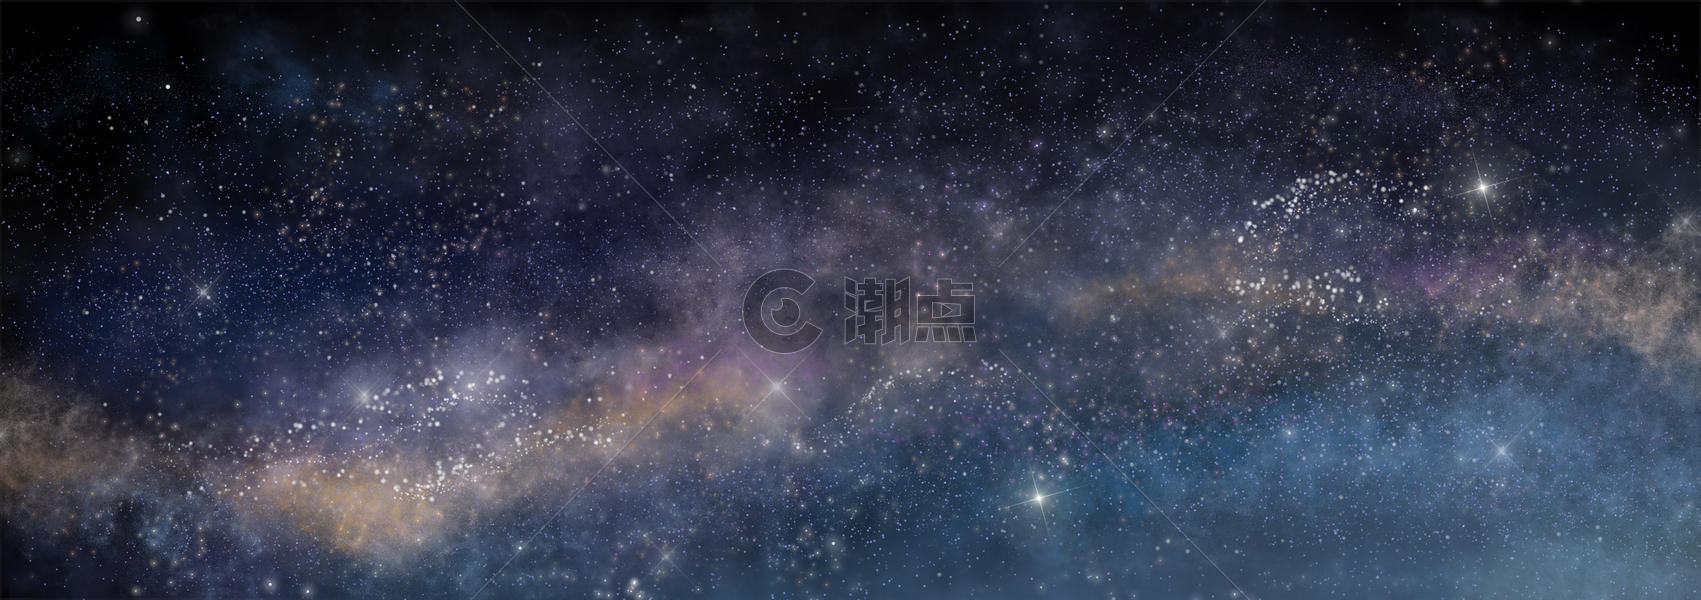 星空银河背景图片素材免费下载